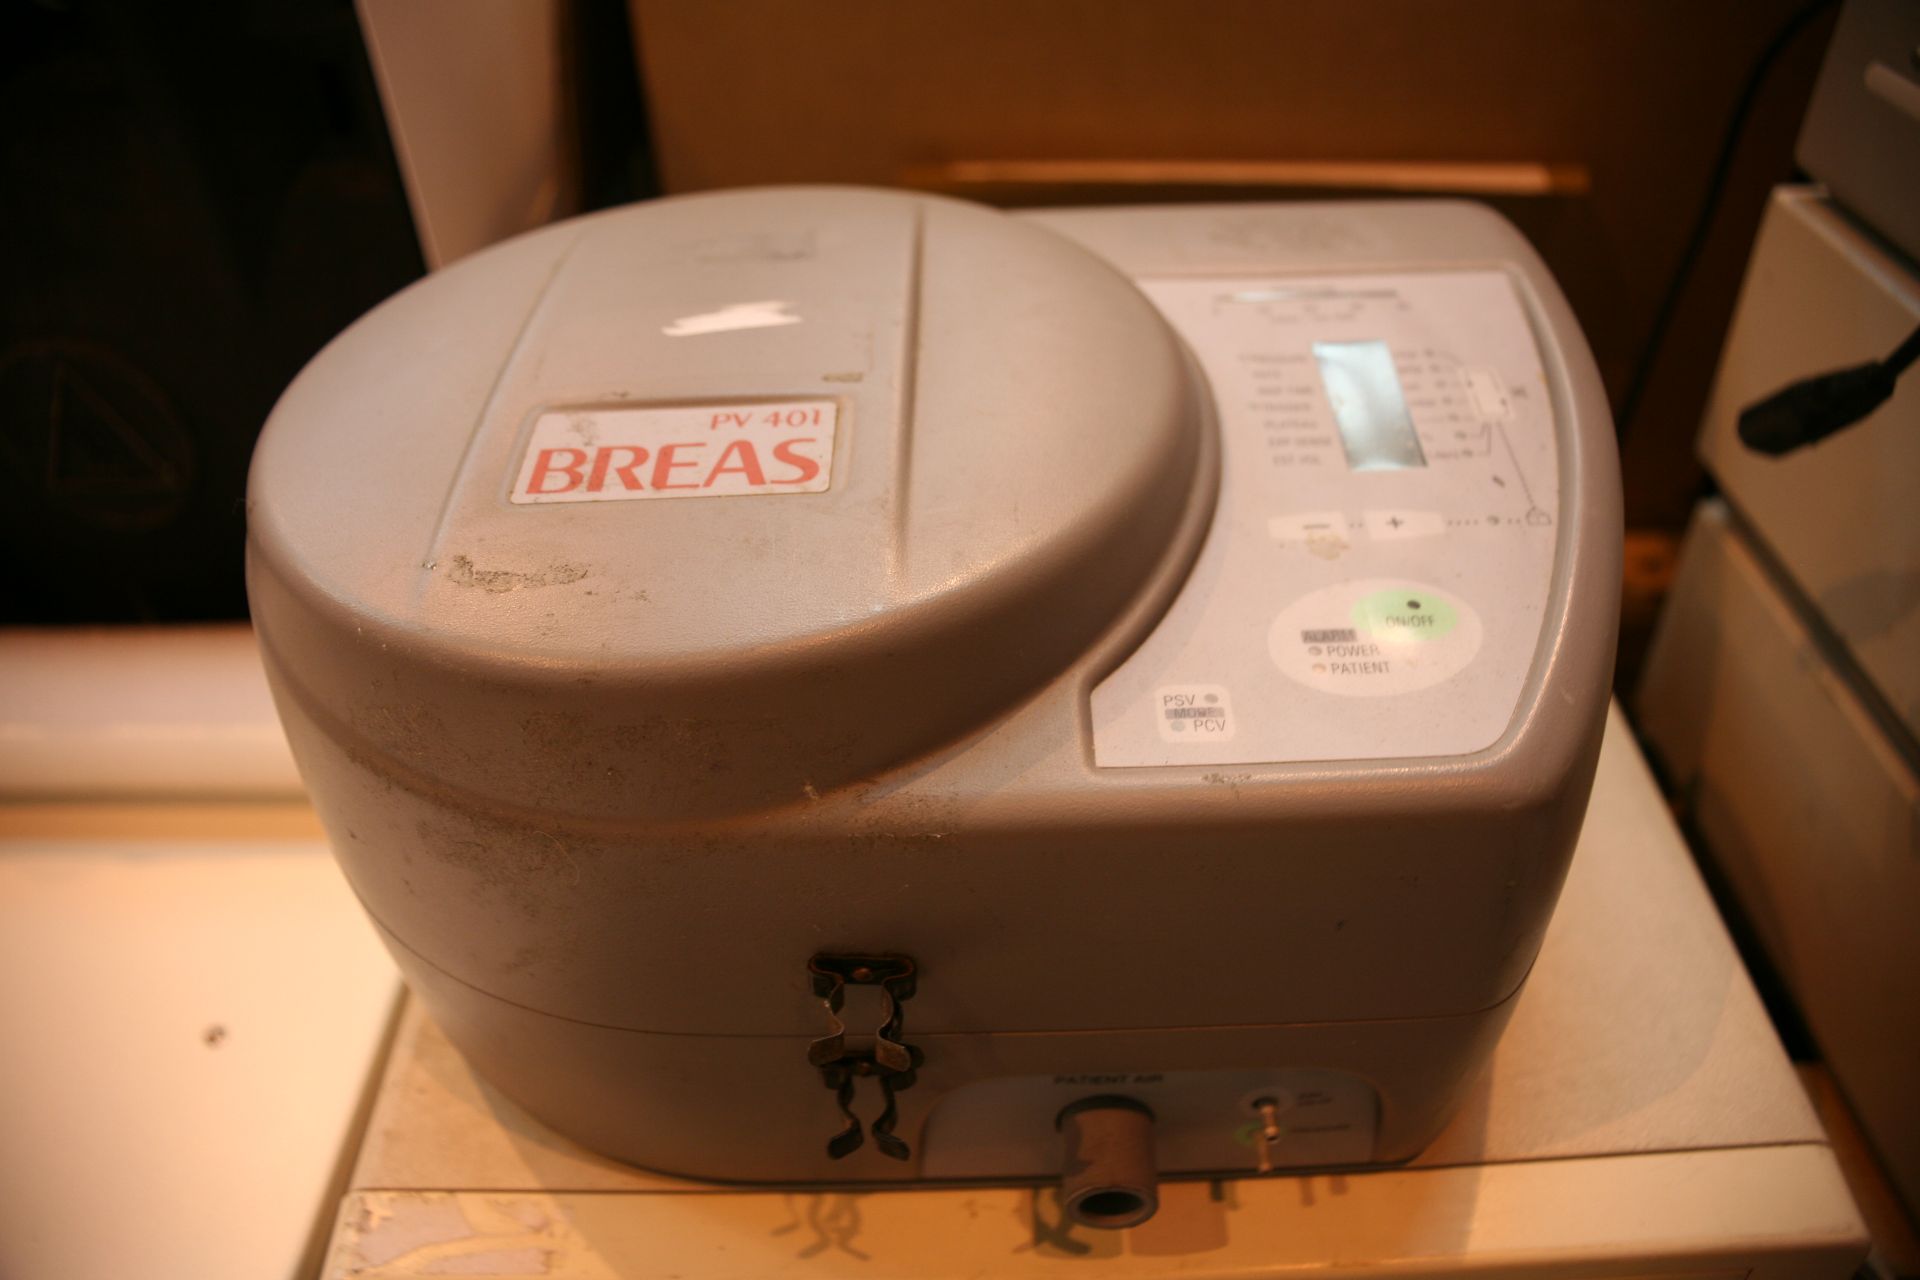 Breas PV 401 Portable Ventilator